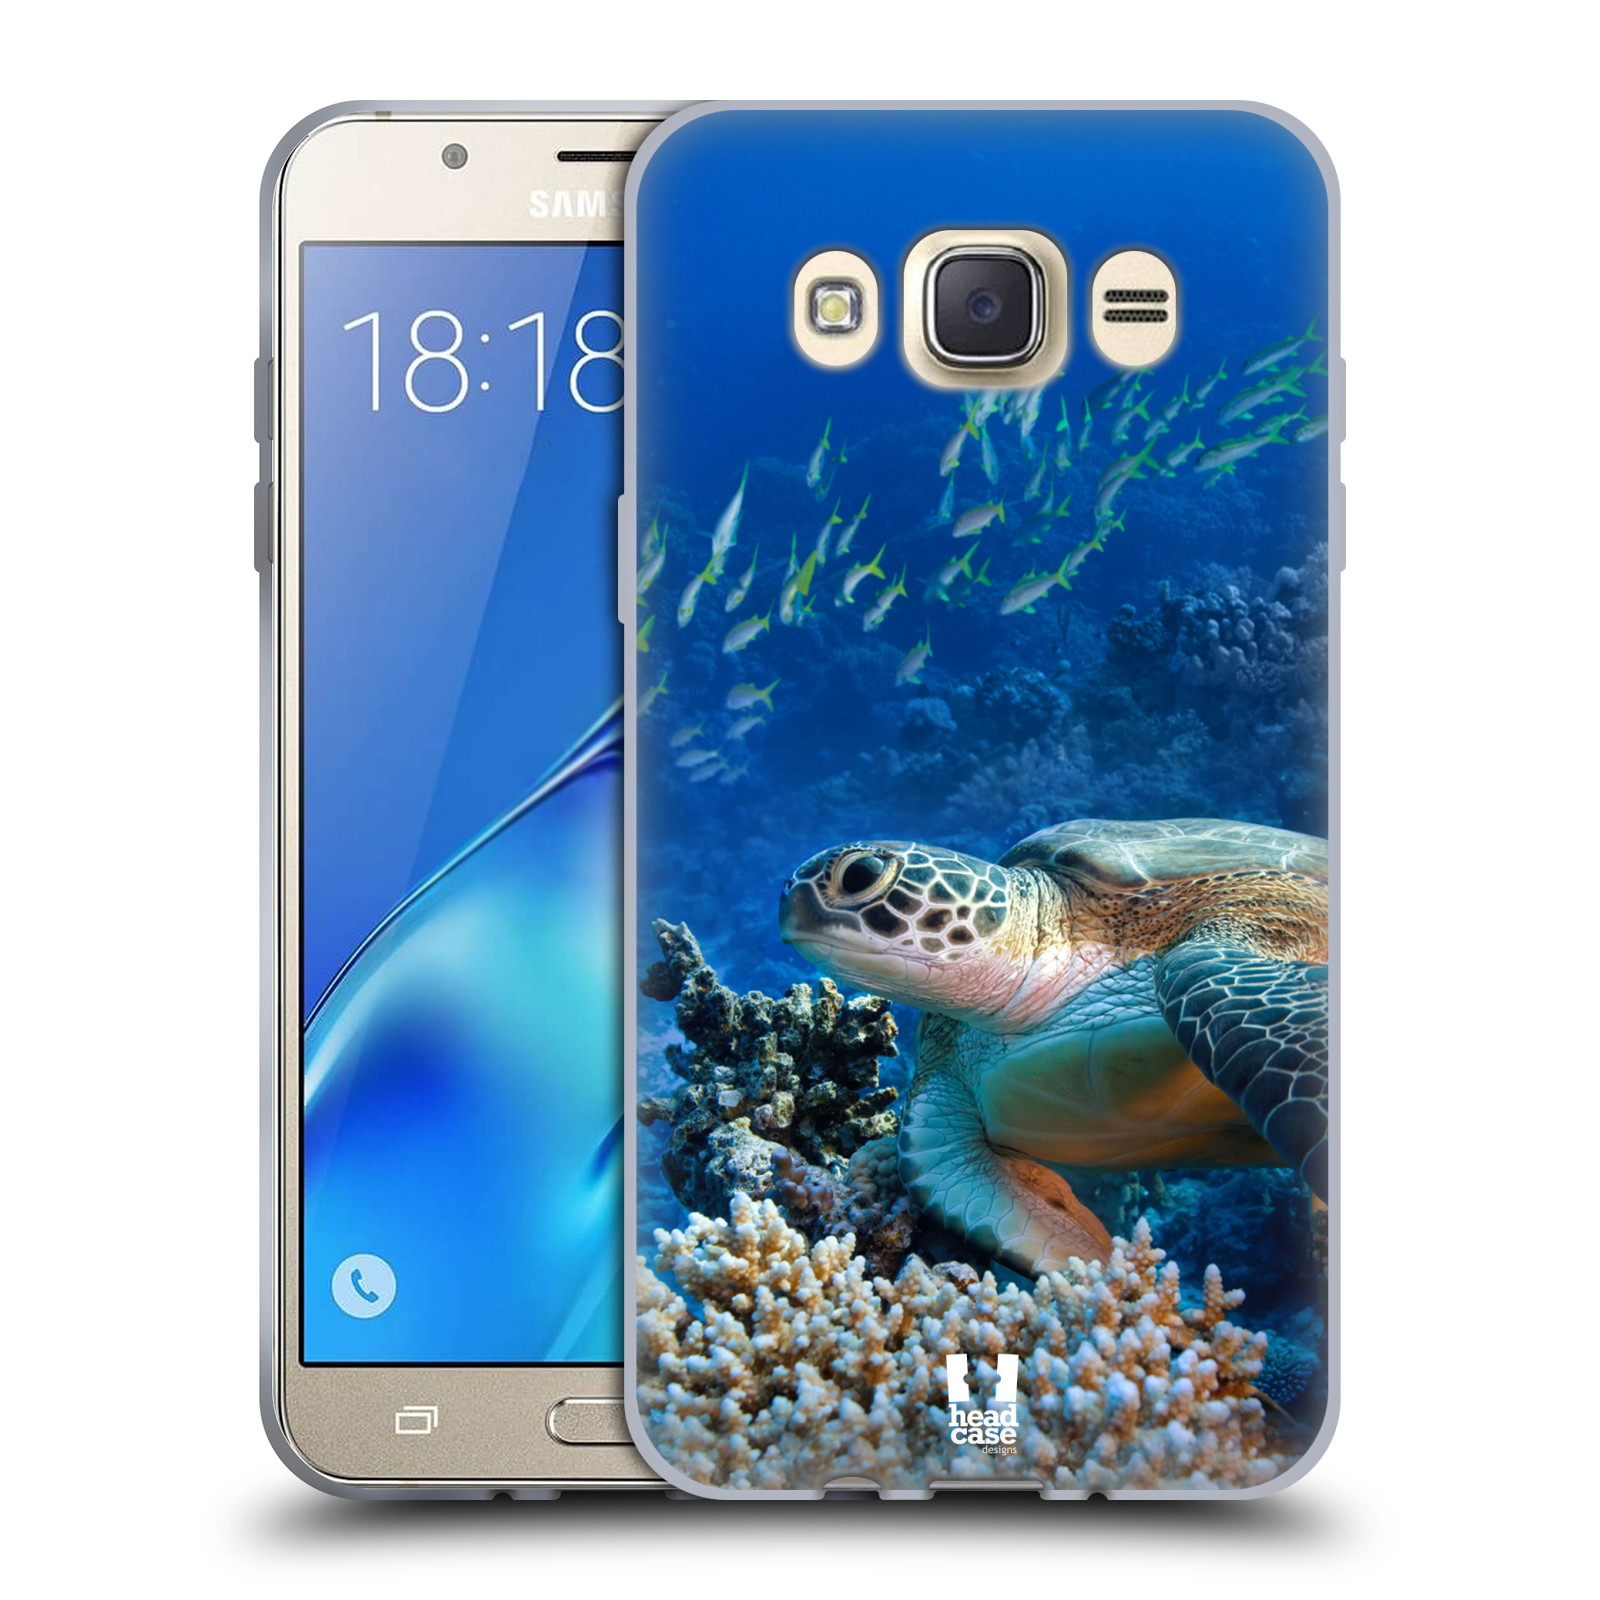 HEAD CASE silikonový obal, kryt na mobil Samsung Galaxy J7 2016 (J710, J710F) vzor Divočina, Divoký život a zvířata foto MOŘSKÁ ŽELVA MODRÁ PODMOŘSKÁ HLADINA